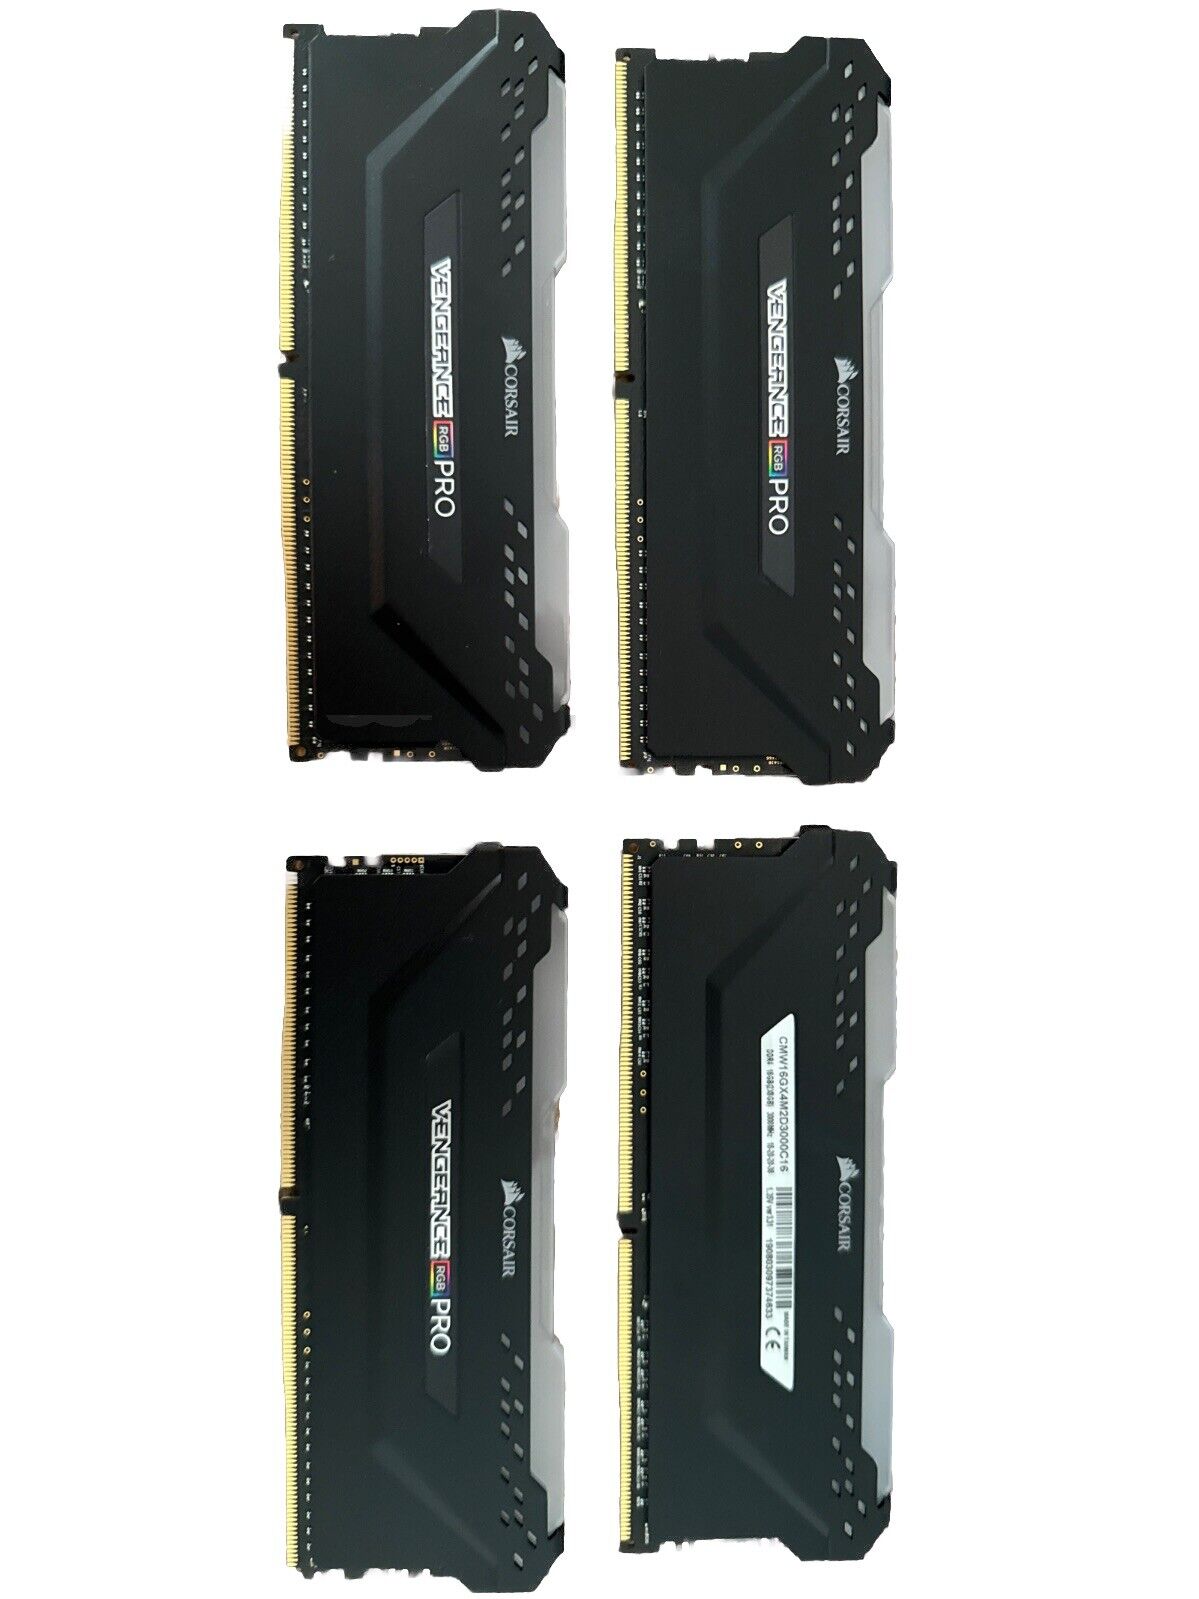 Corsair Vengeance RGB Pro 16GB (2 x 8GB) PC4-24000 (DDR4-3000) Memory...